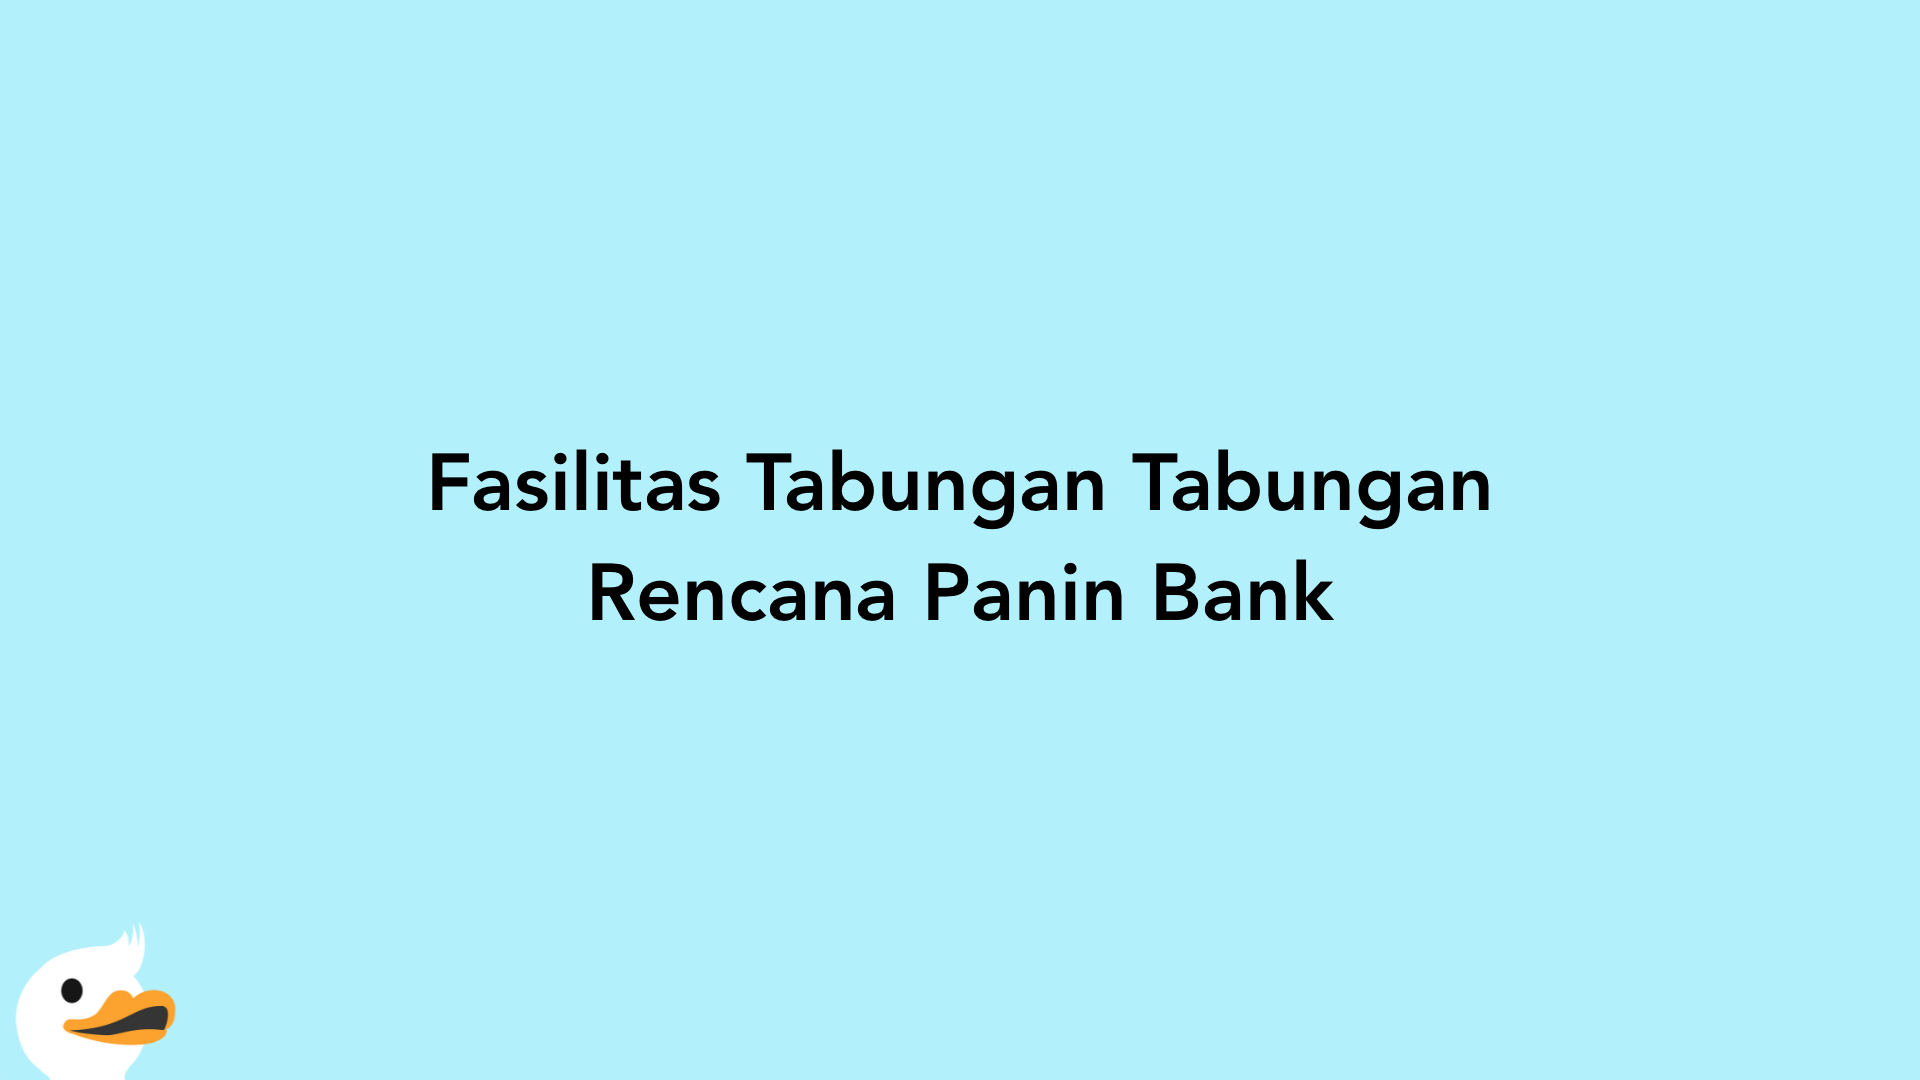 Fasilitas Tabungan Tabungan Rencana Panin Bank